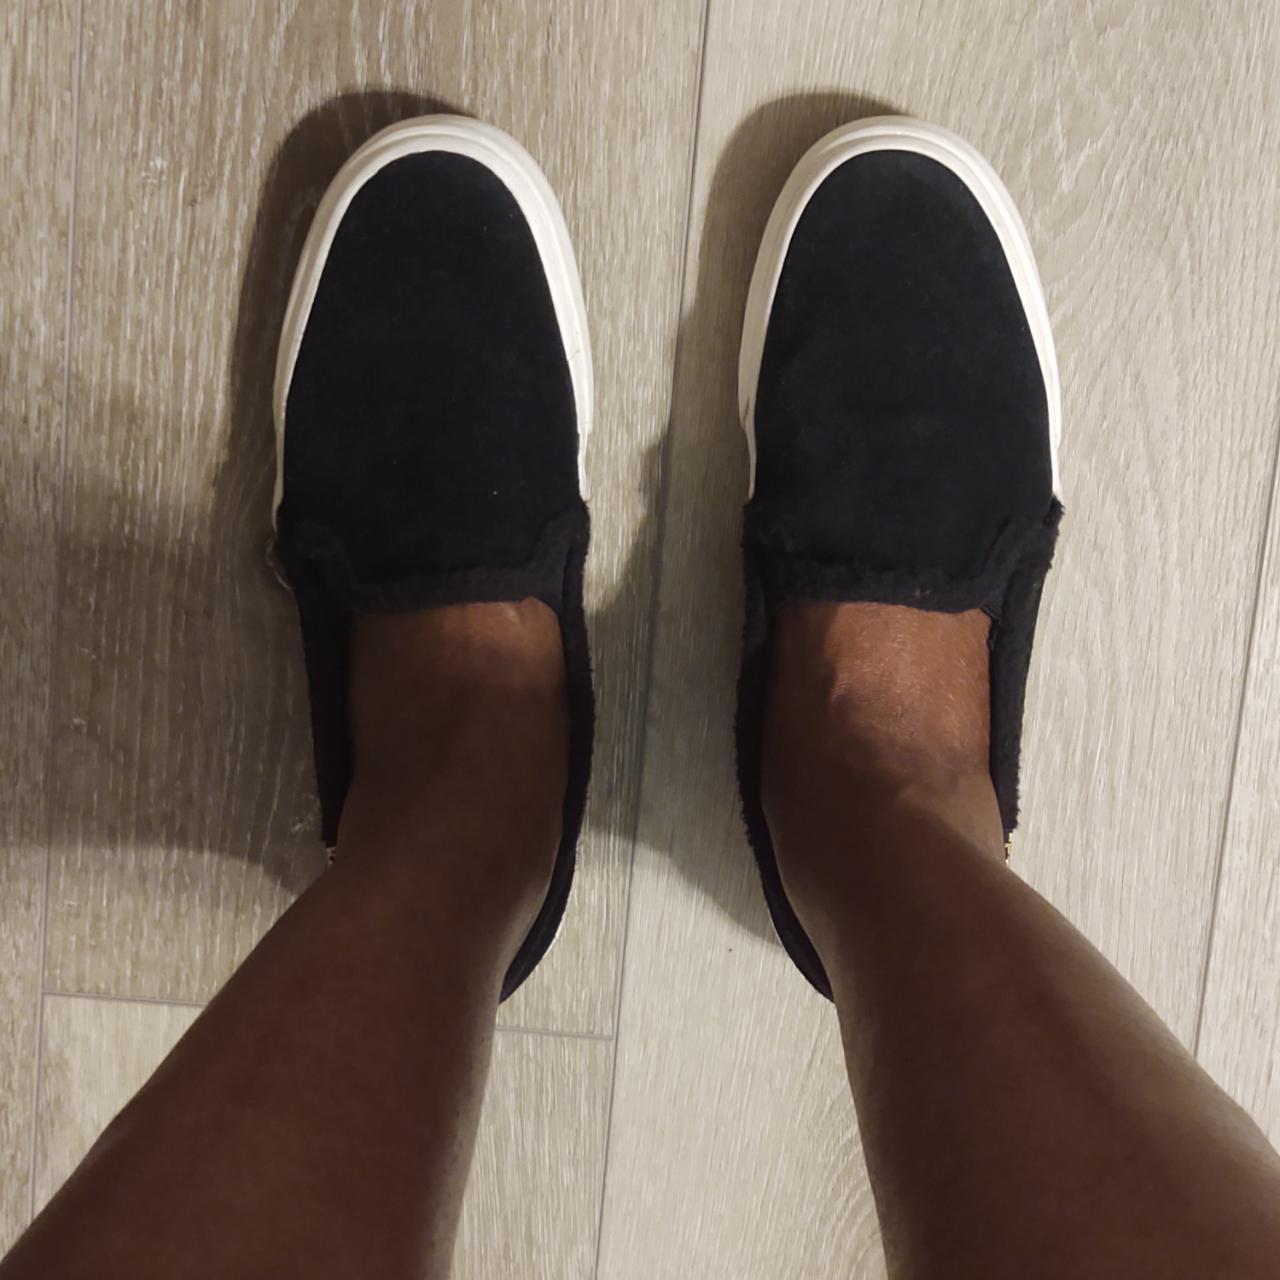 Black, suede boat shoes - Depop